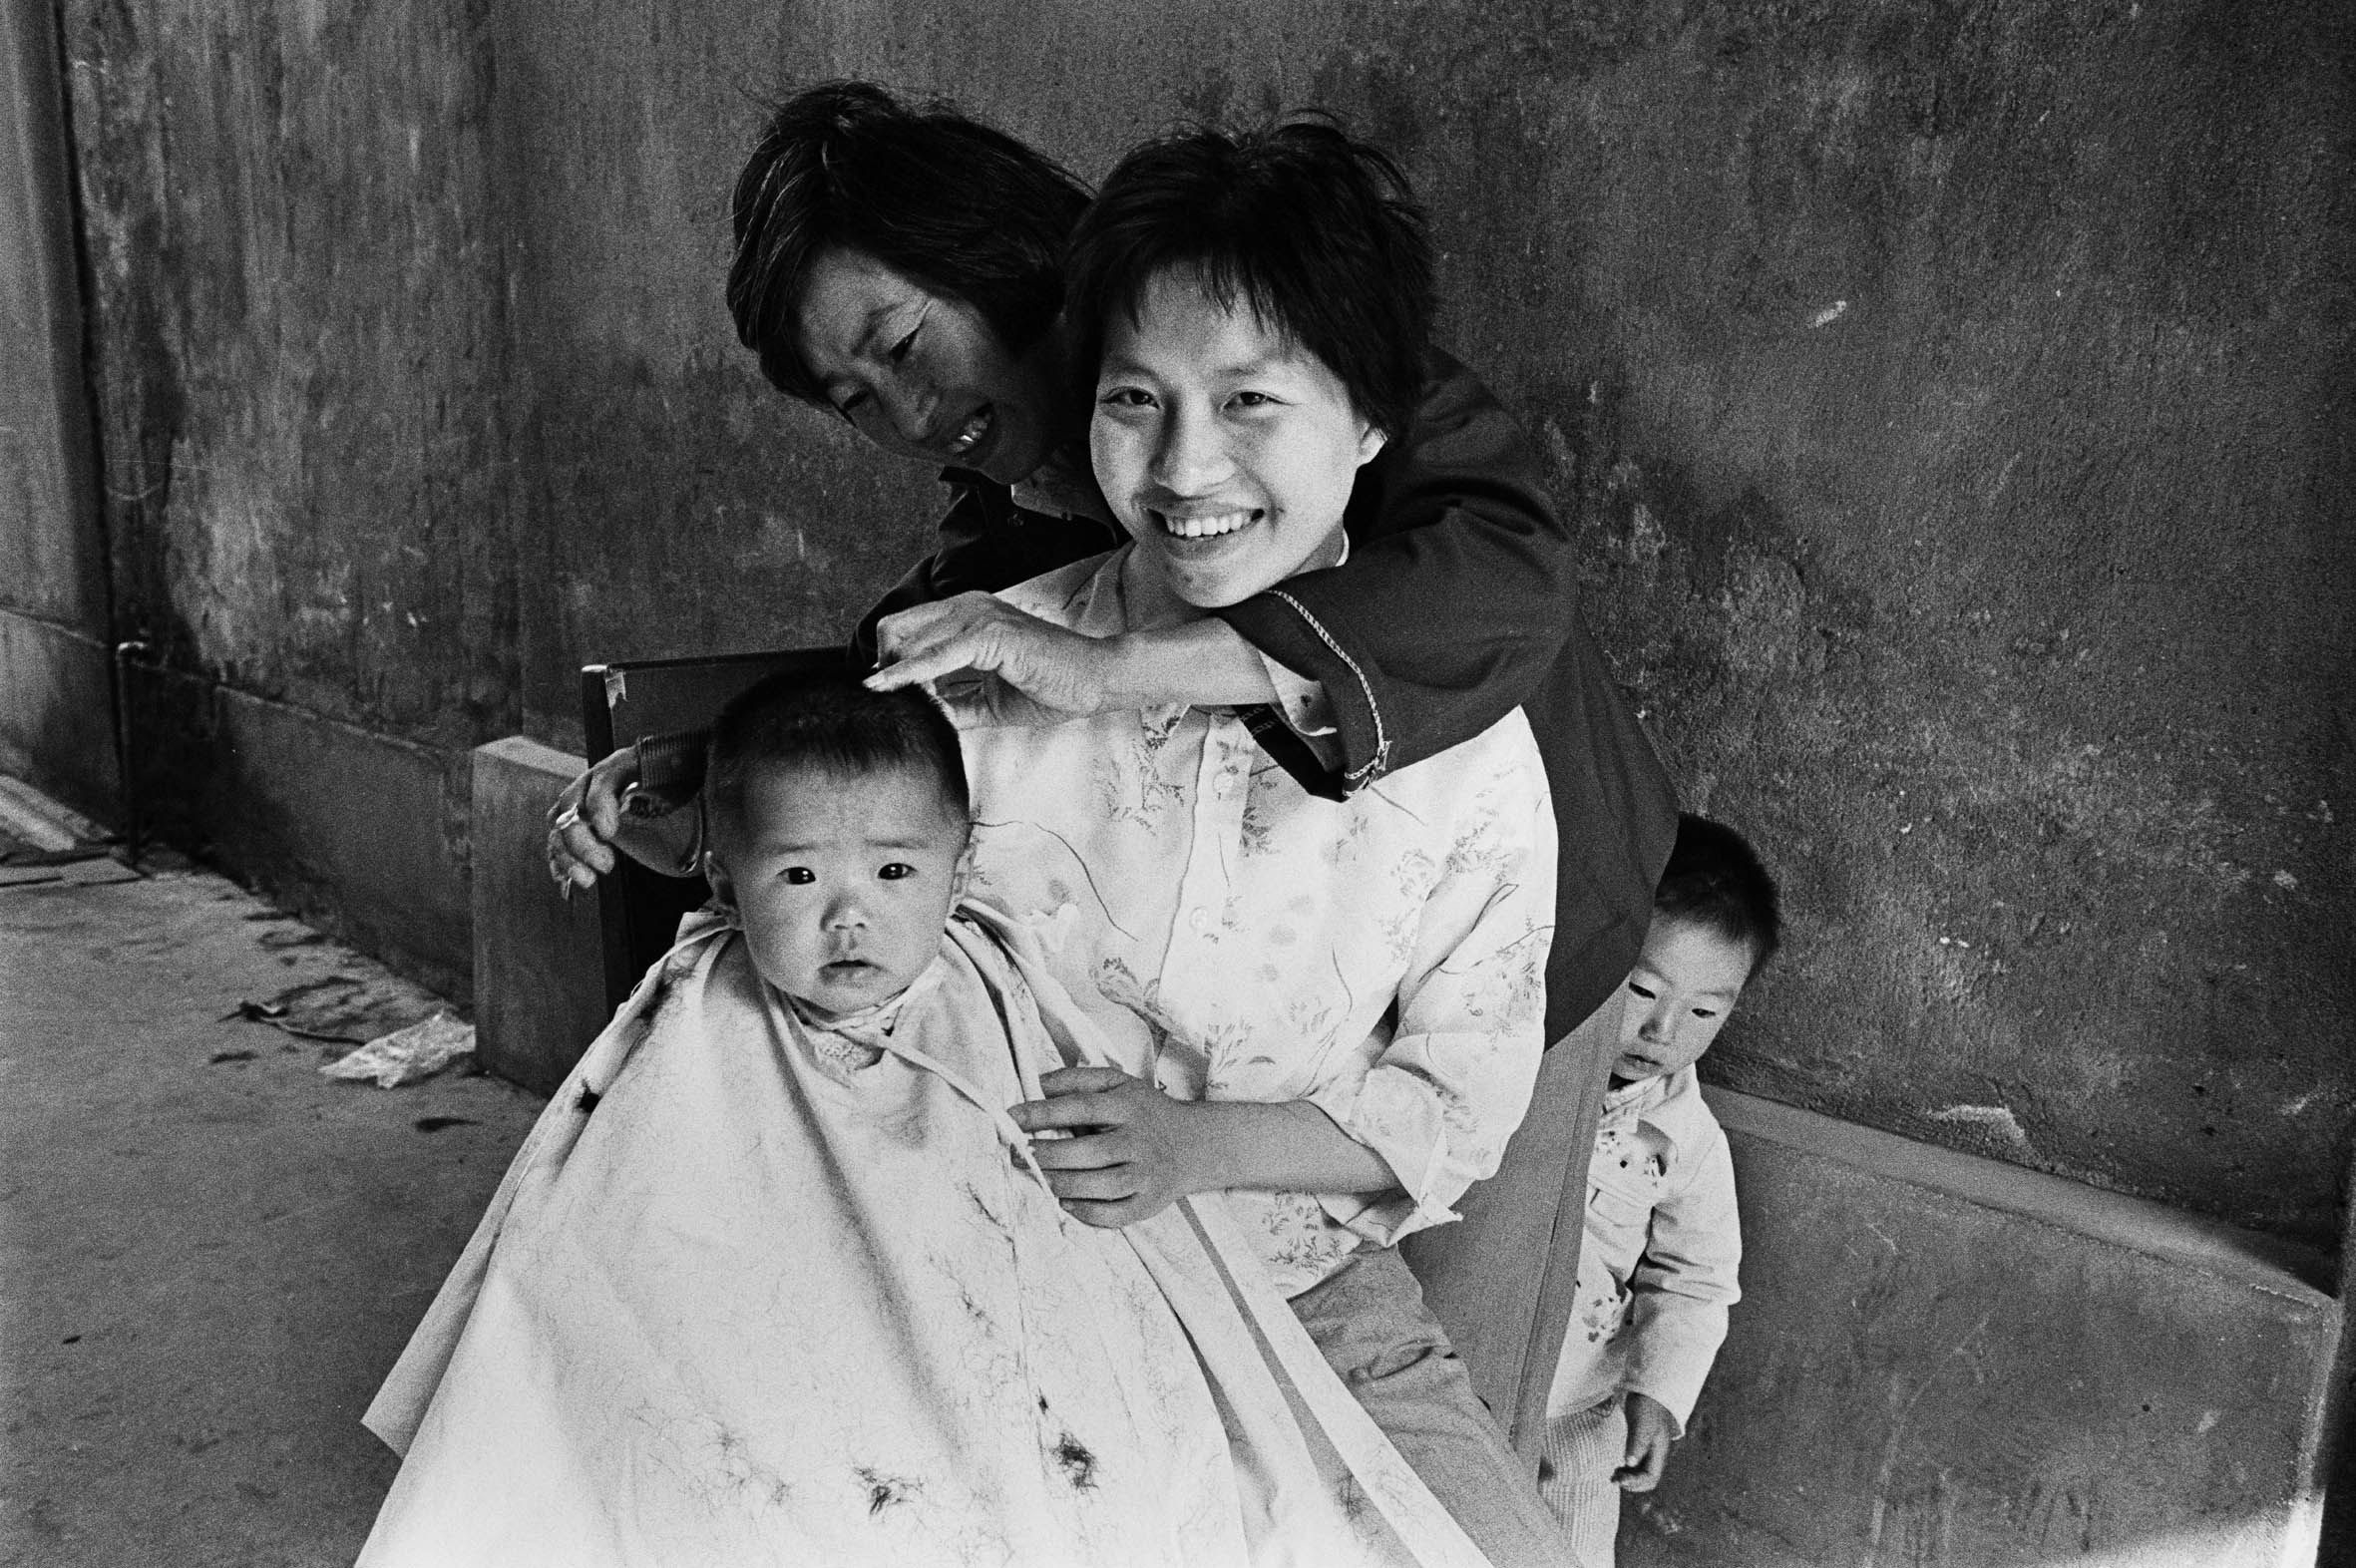 шанхай 1980 год